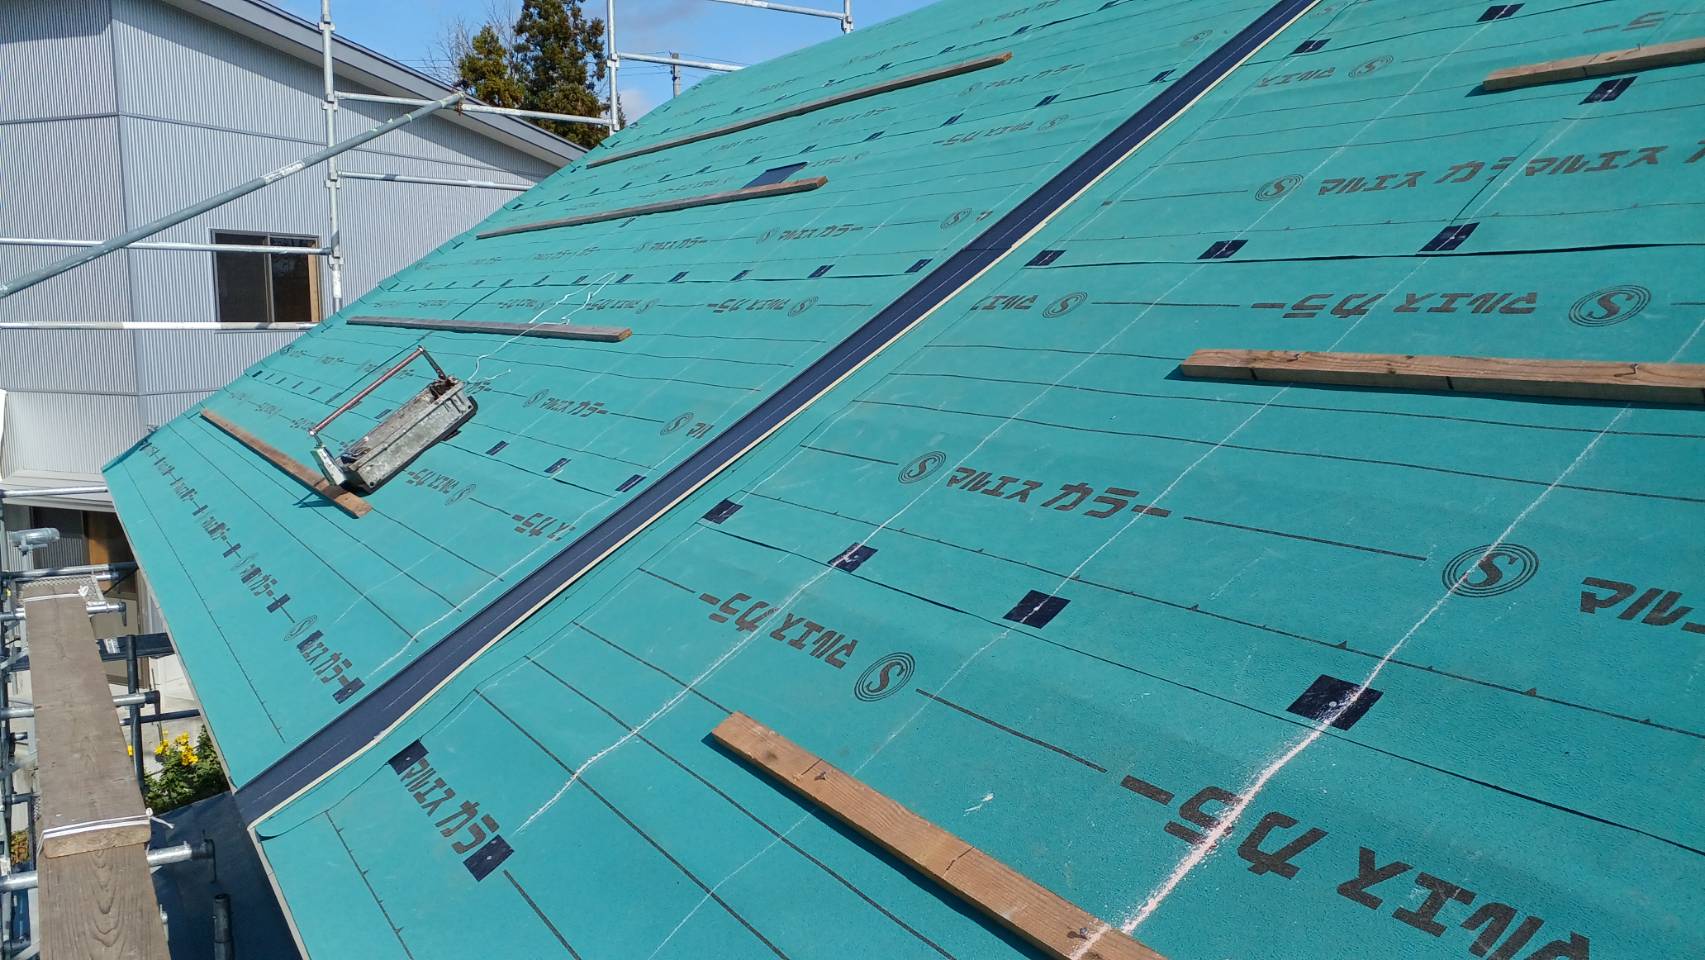 横葺きが長いので、作業効率・コストの面から横葺きジョイントを採用しています。<br />
ジョイントは自社製です。<br />
木材が見えますが、これは屋根の勾配が強いので足掛かりのためにつけています。